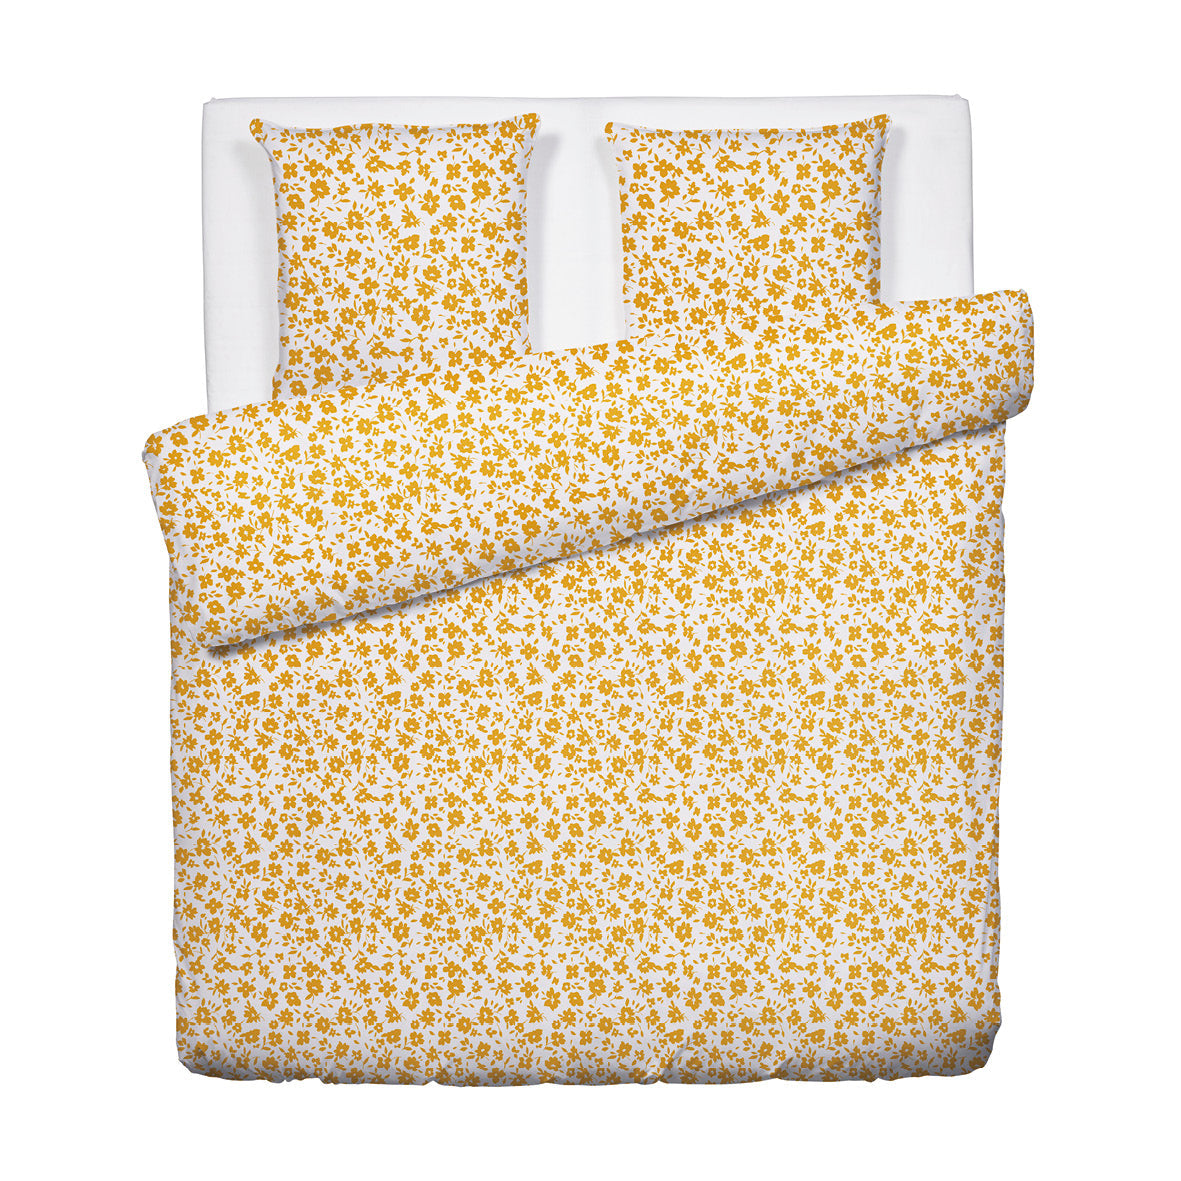 Duvet cover + pillowcase(s) cotton satin - Eglantine White / Yellow